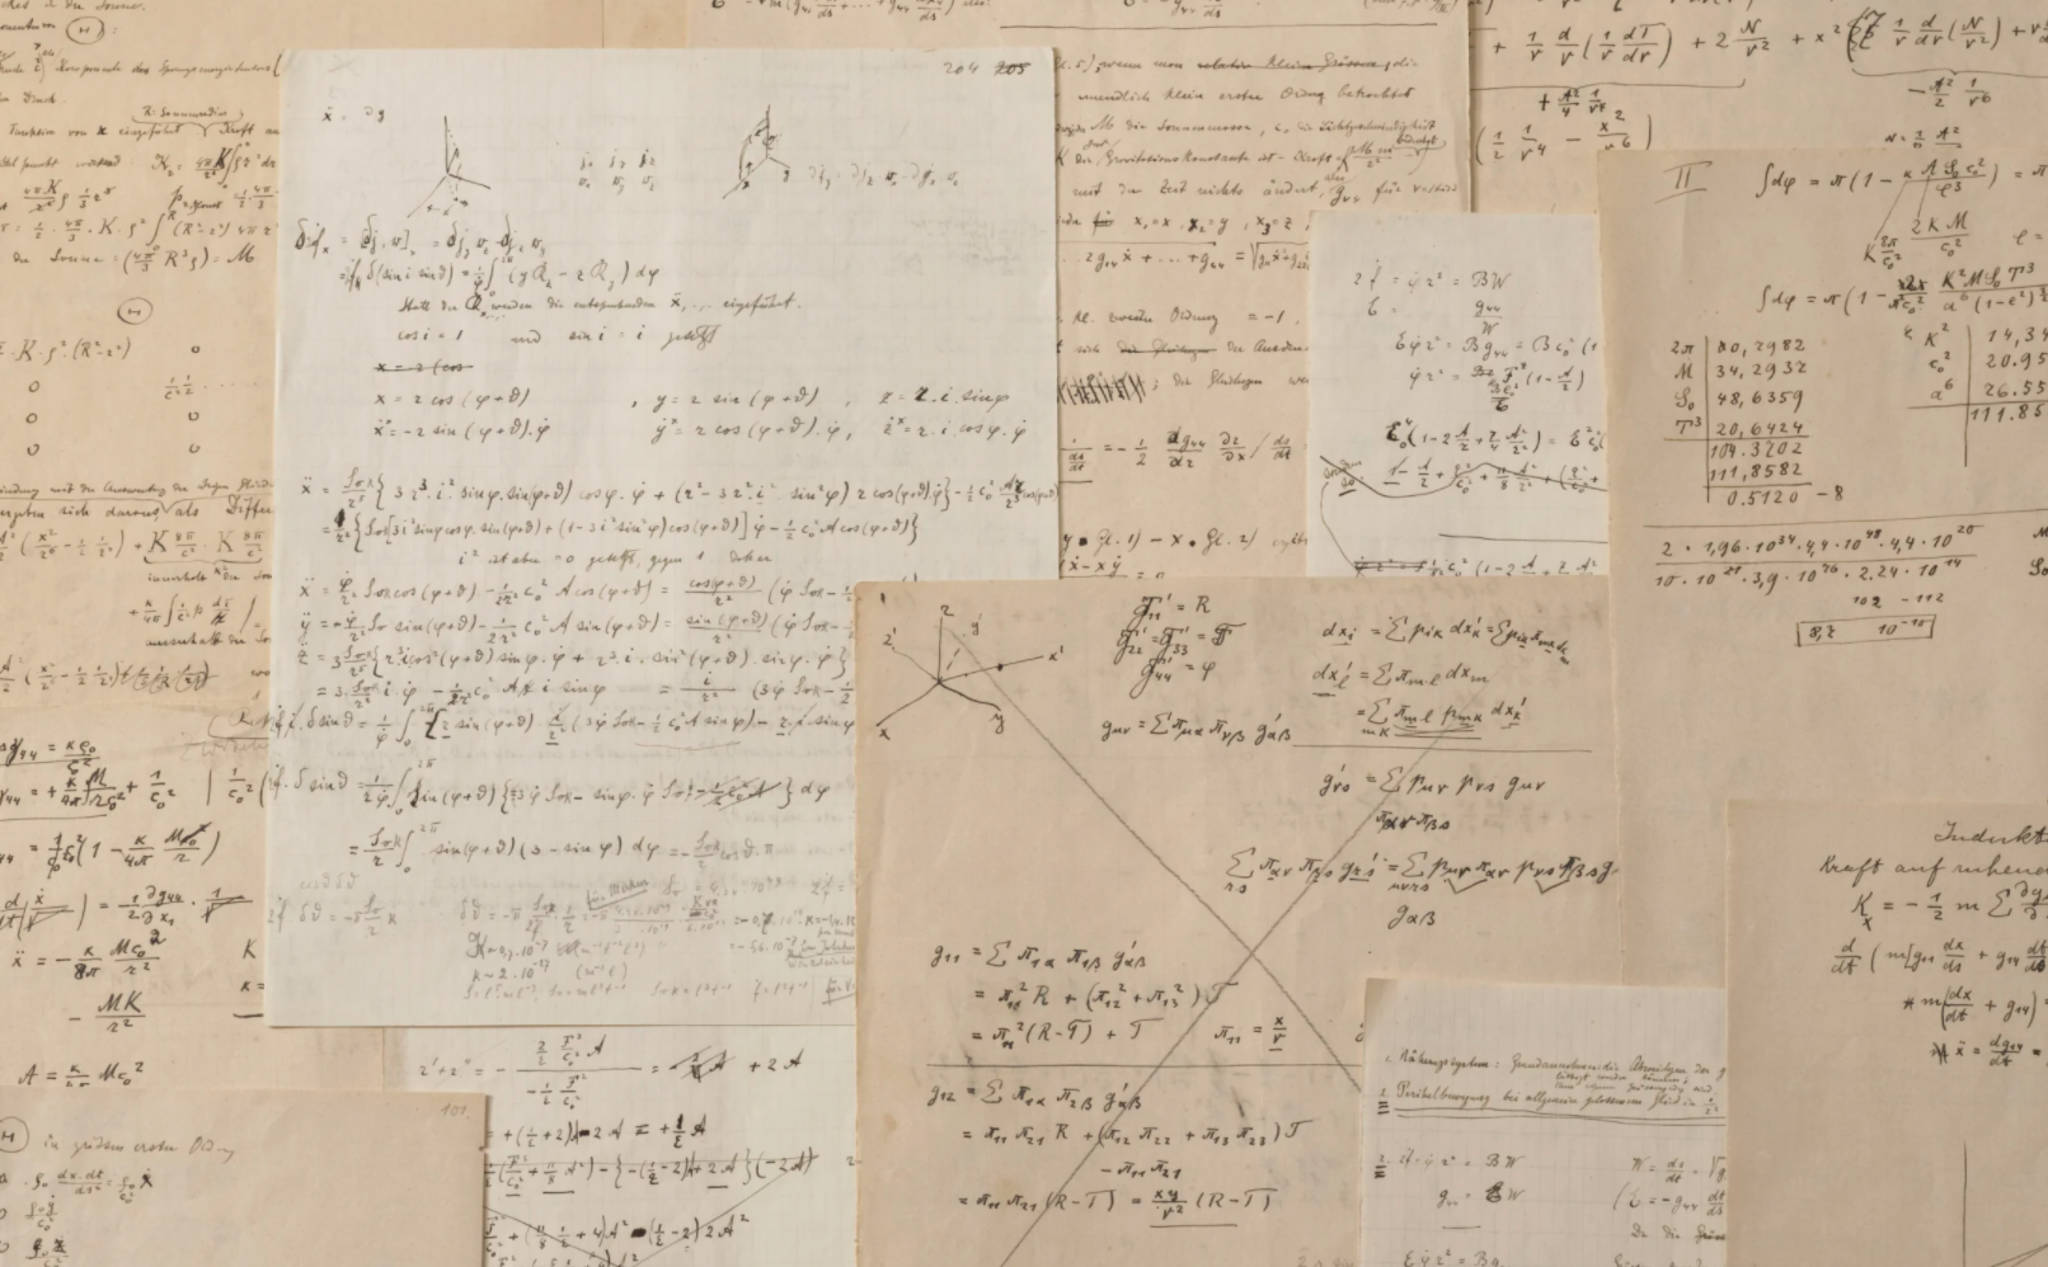 Bản thảo hiếm về thuyết tương đối rộng của Einstein được bán đấu giá đến hơn 13 triệu đô